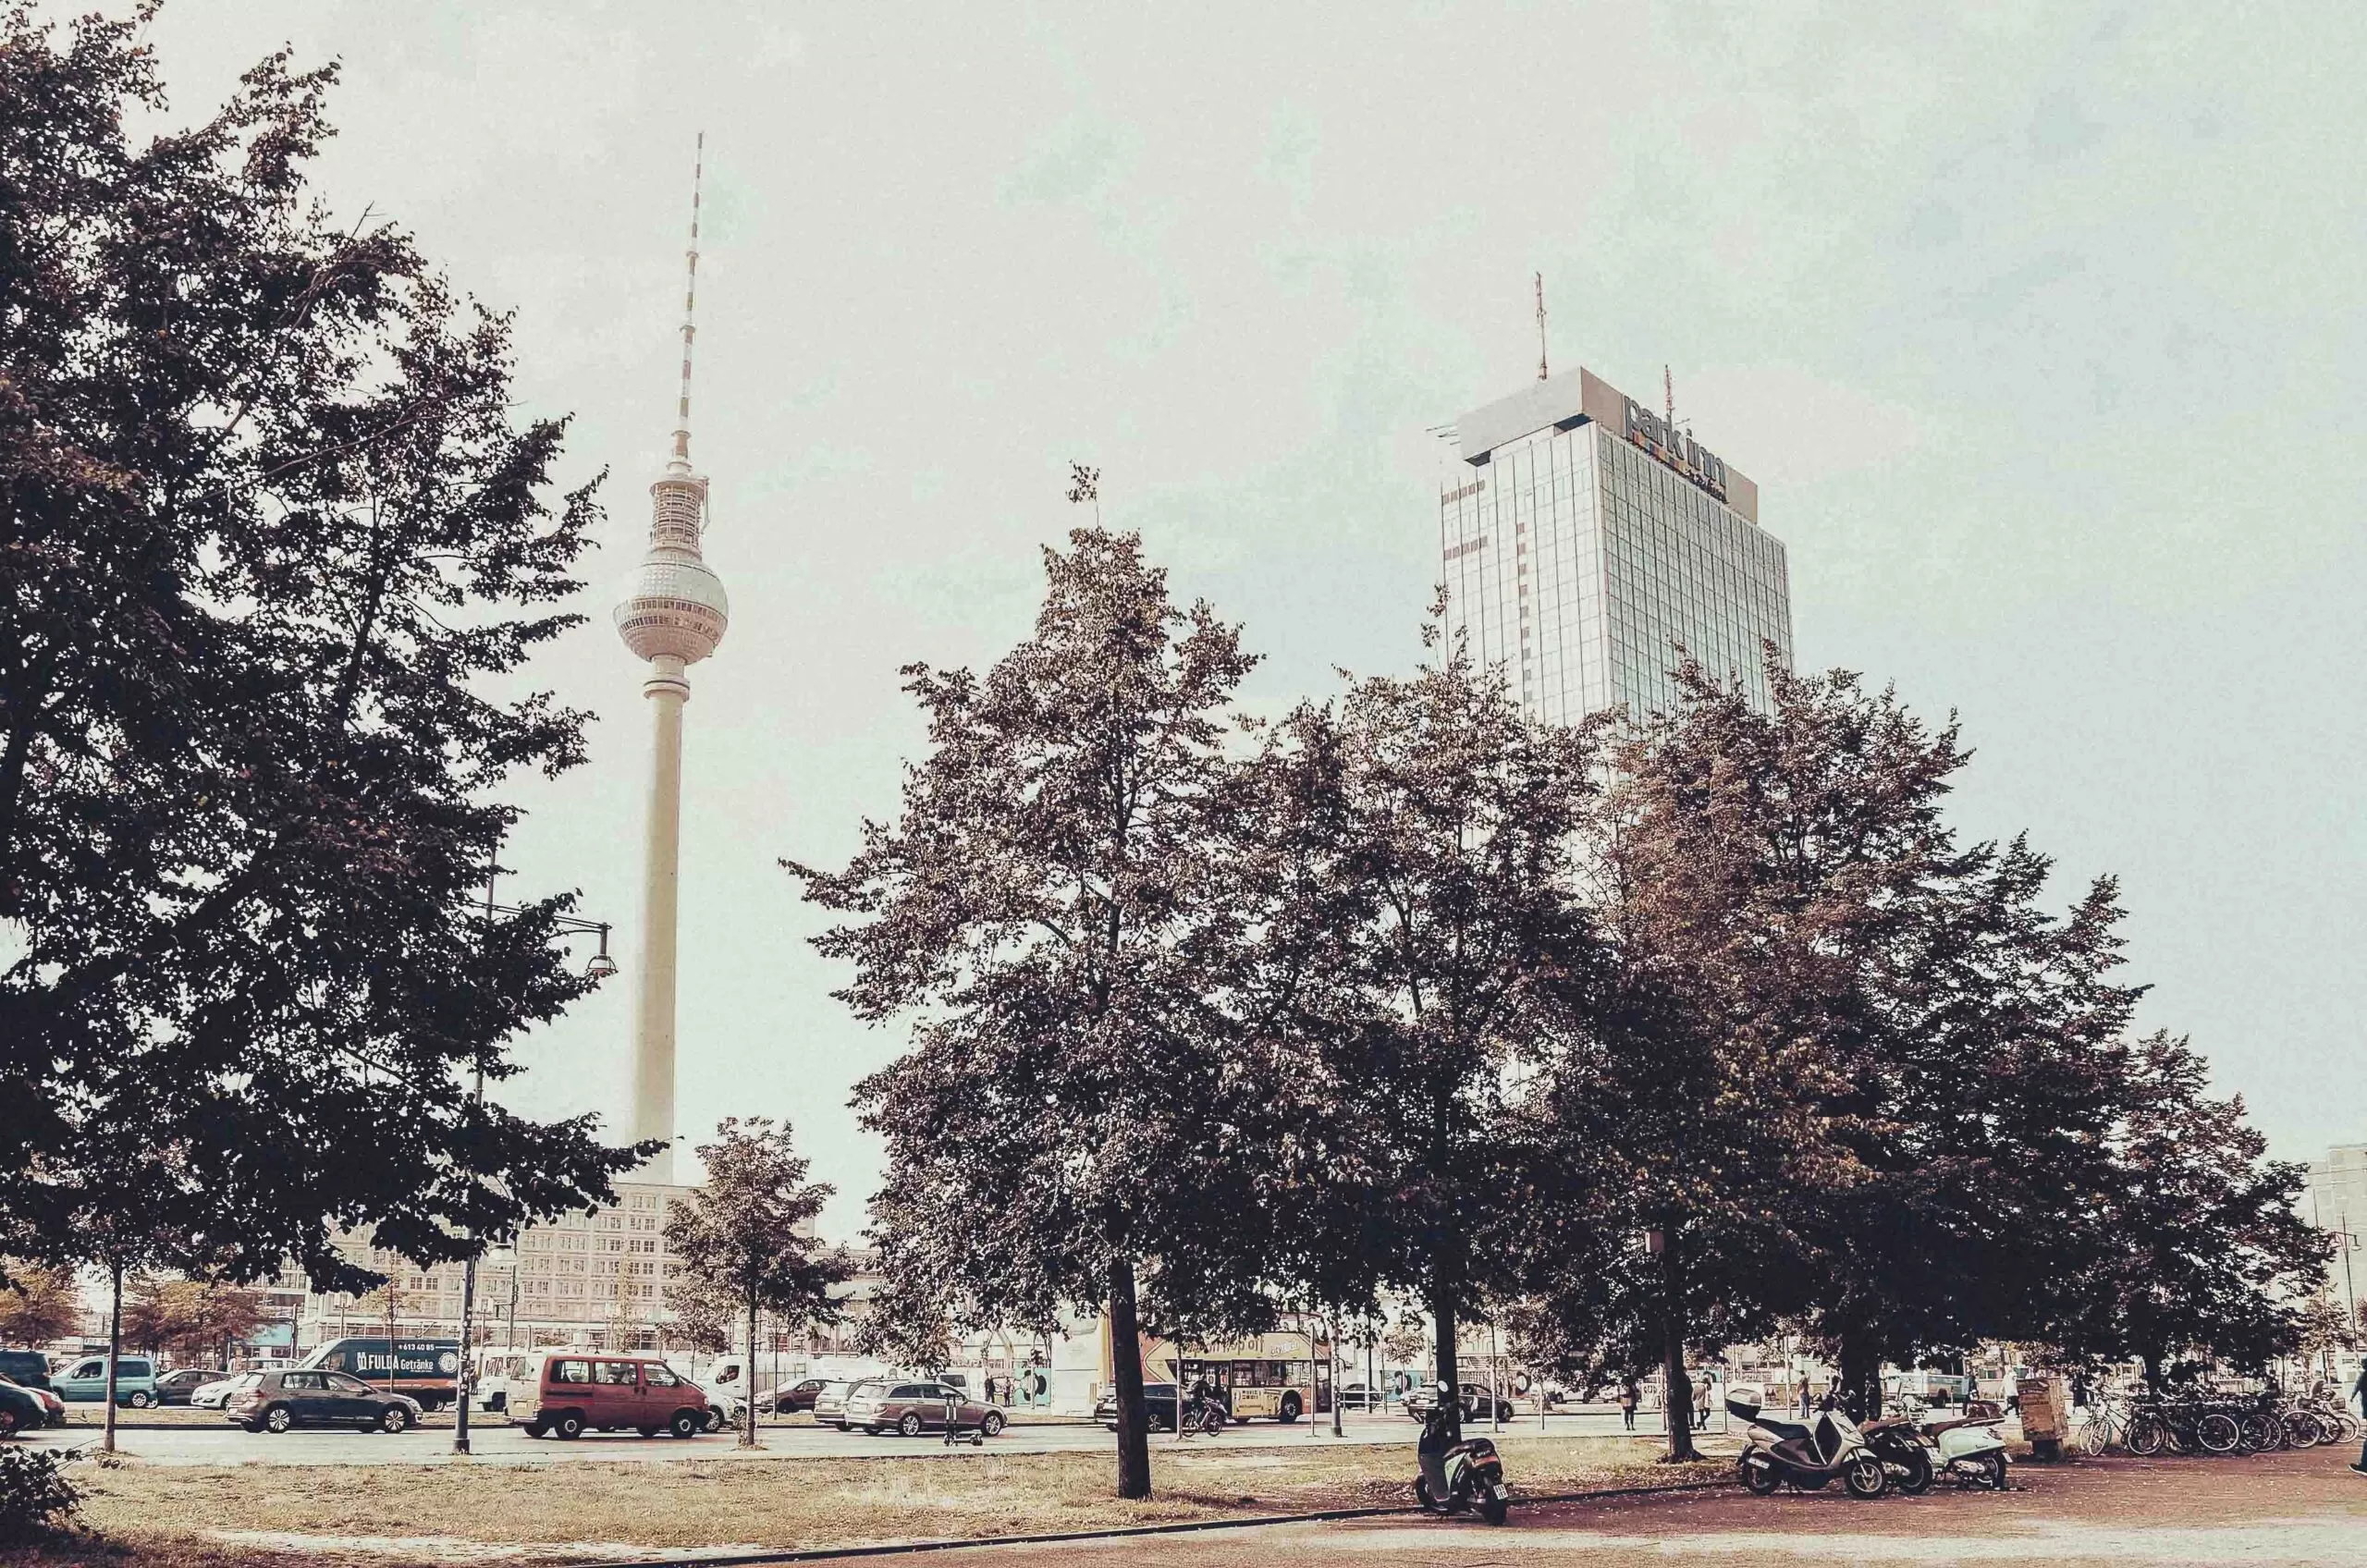 Berlin Fernsehturm @ Berlin, Germany